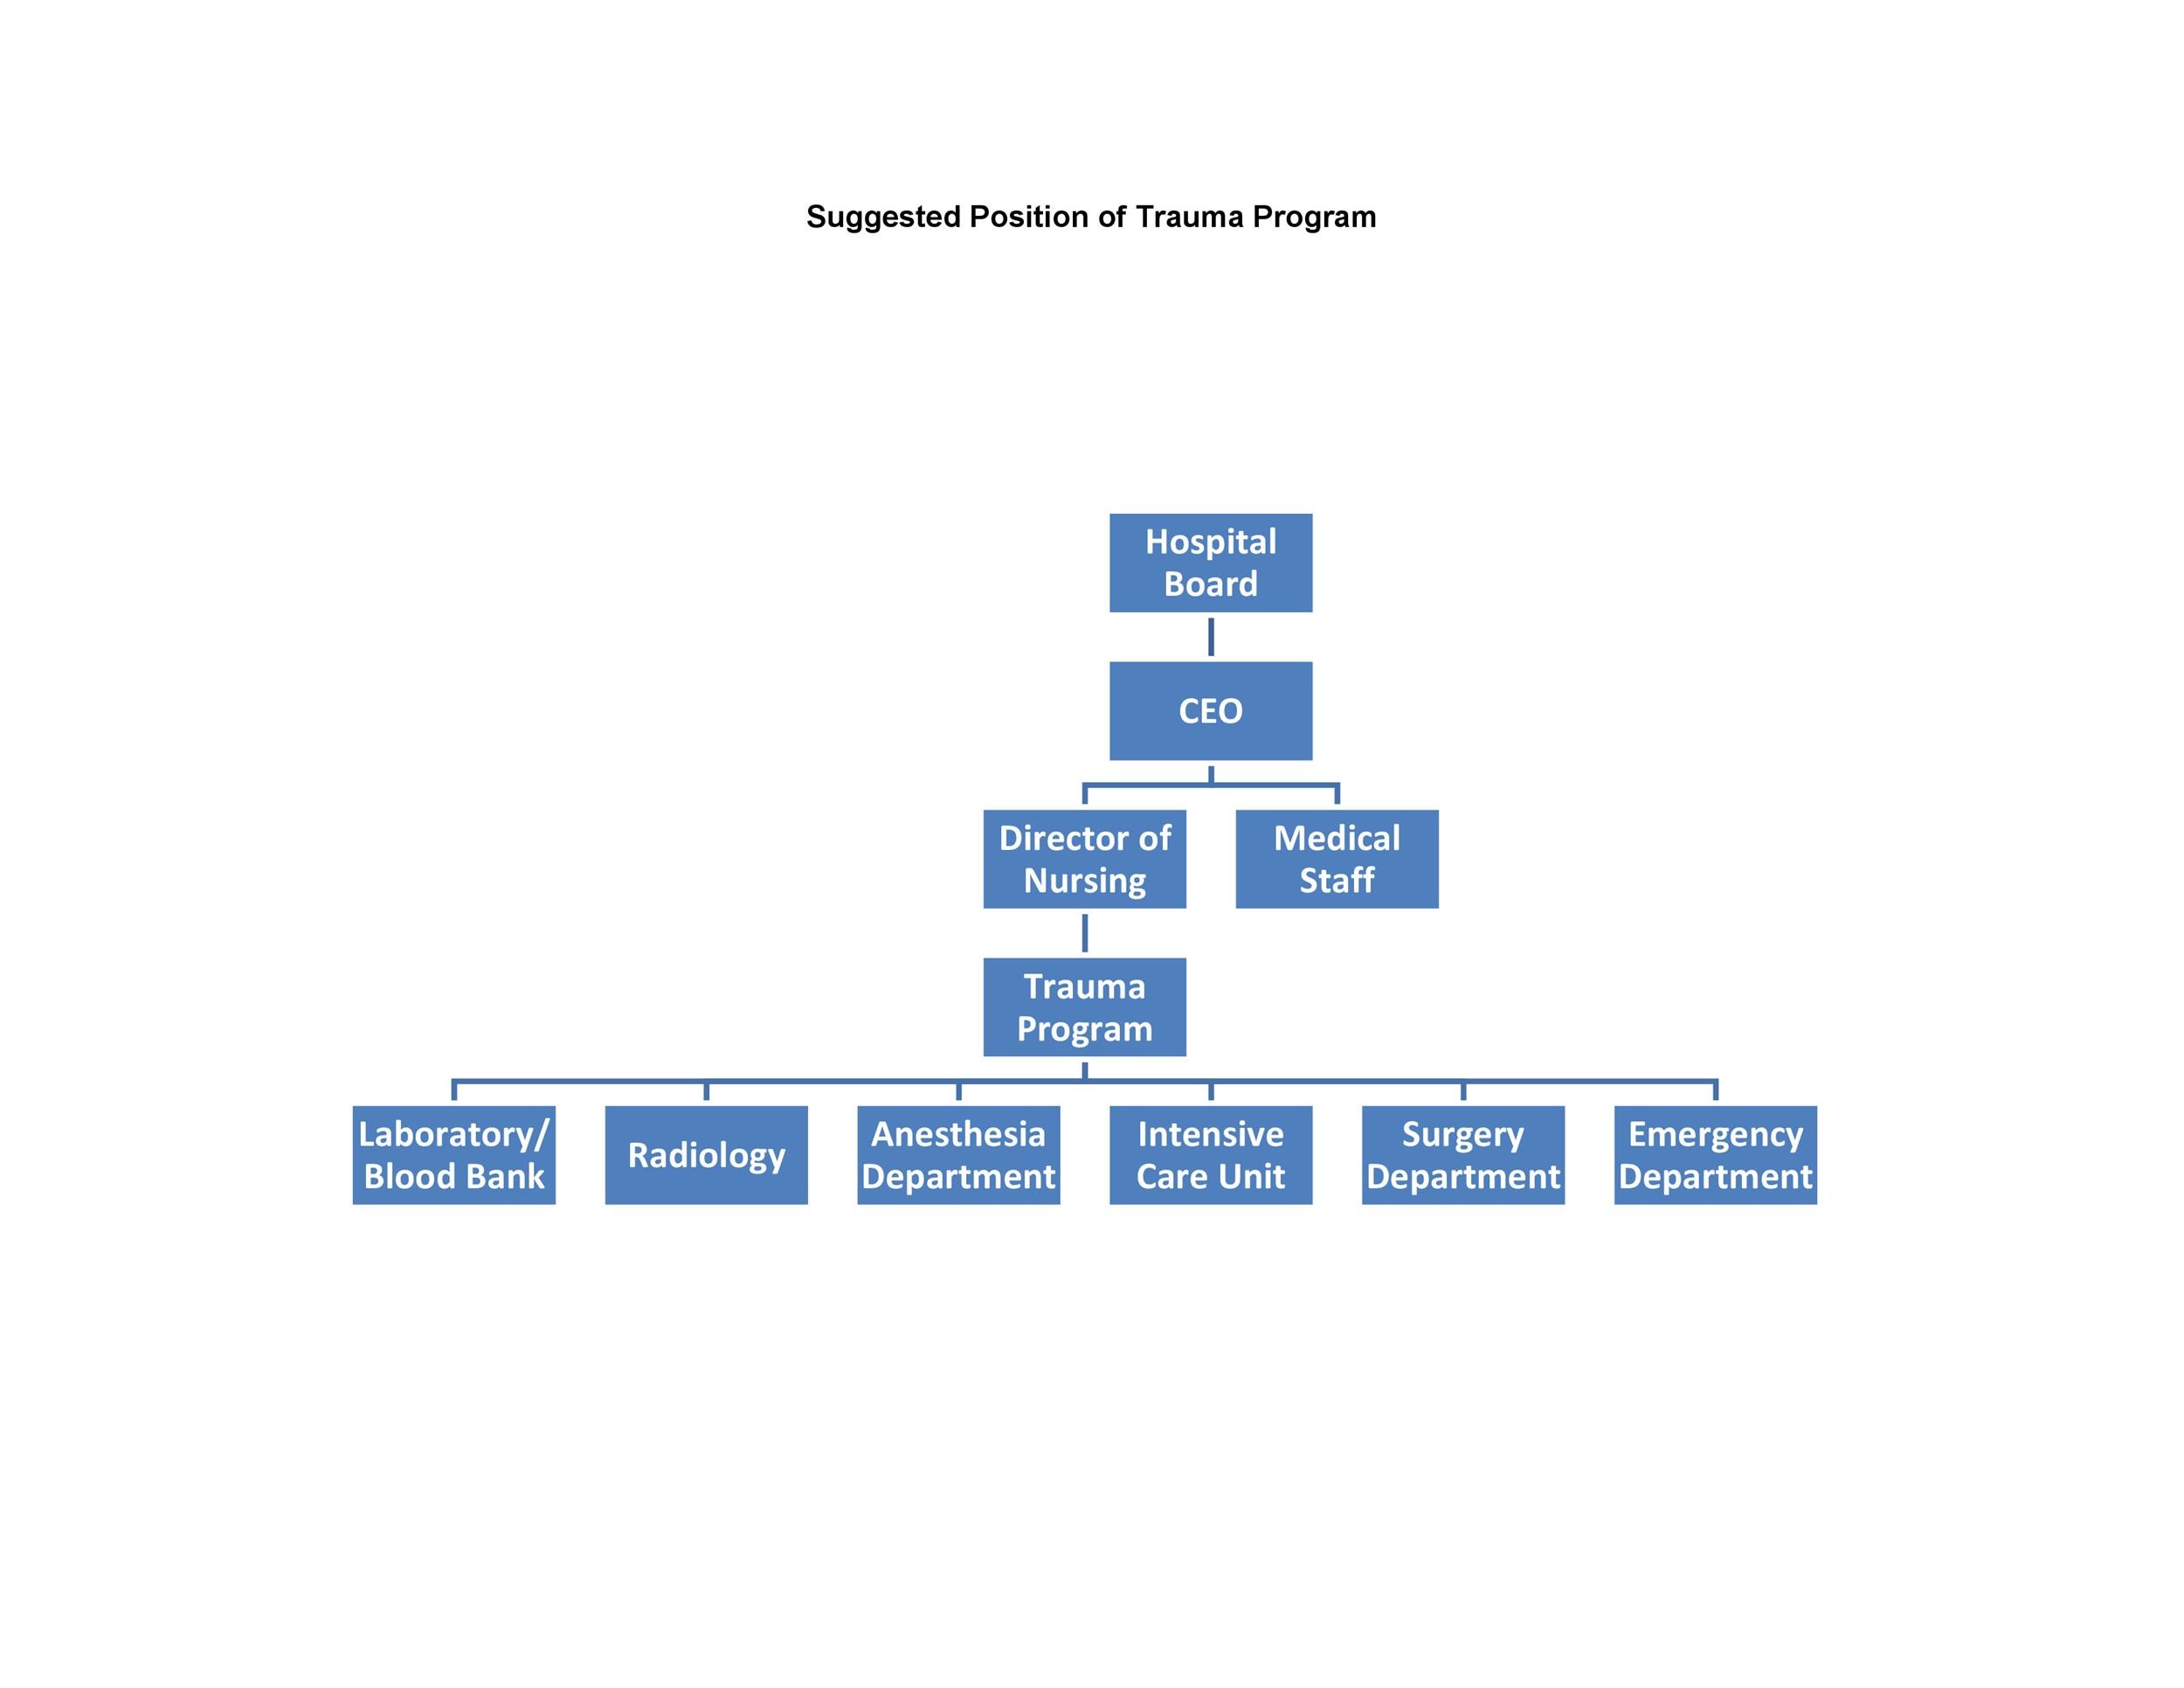 Event Organizational Chart Template